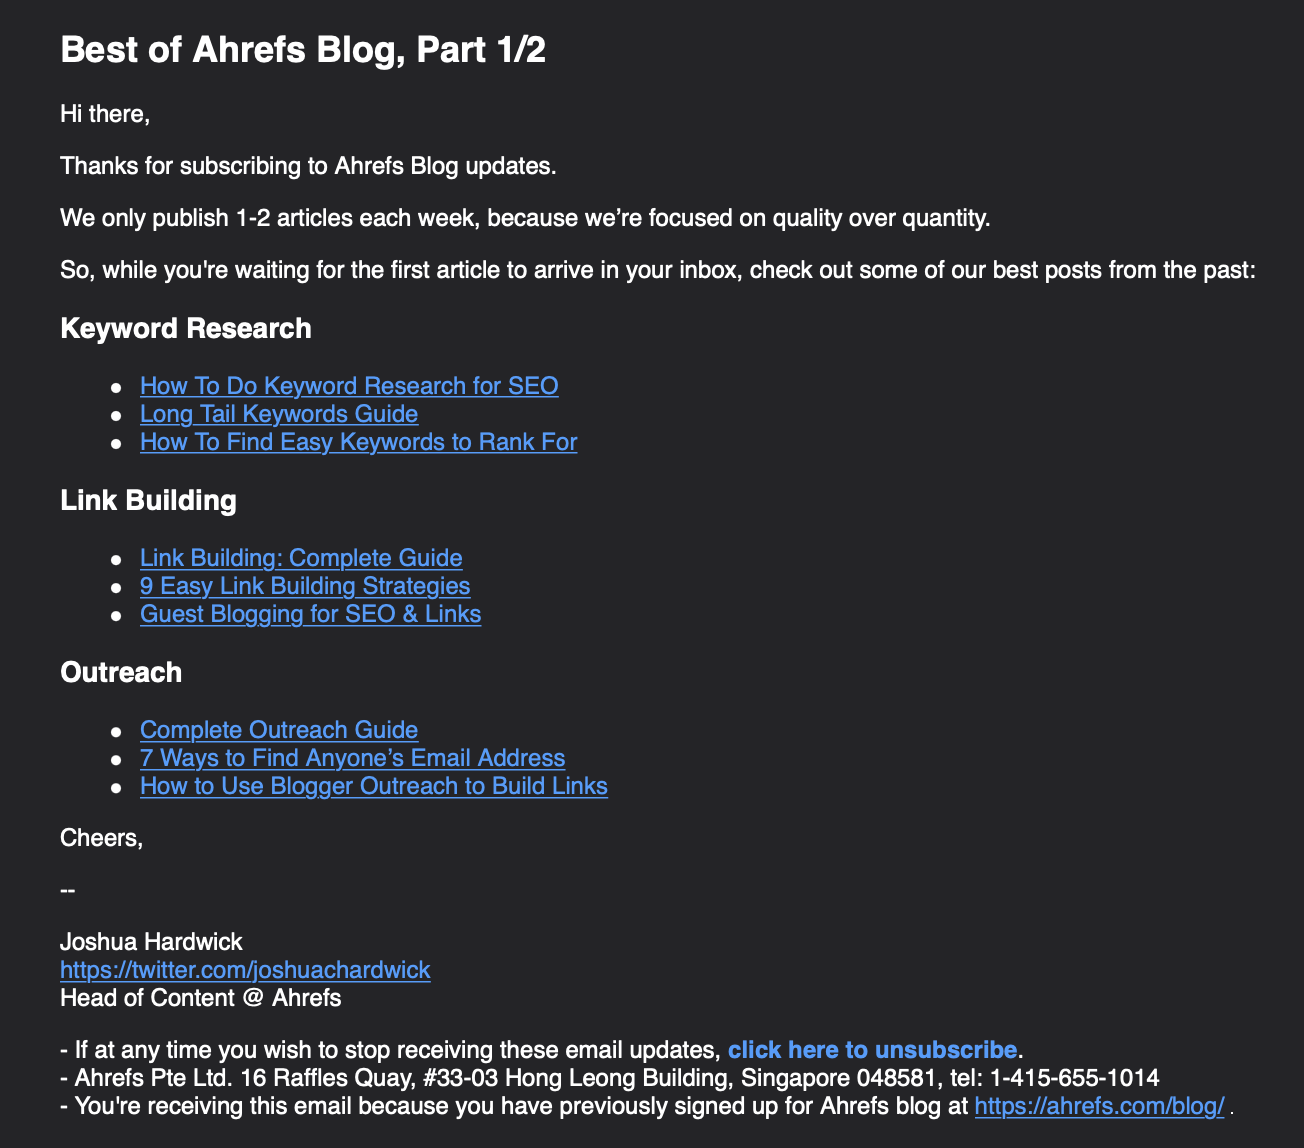 Un email de Ahrefs en el que compartimos enlaces a más contenido